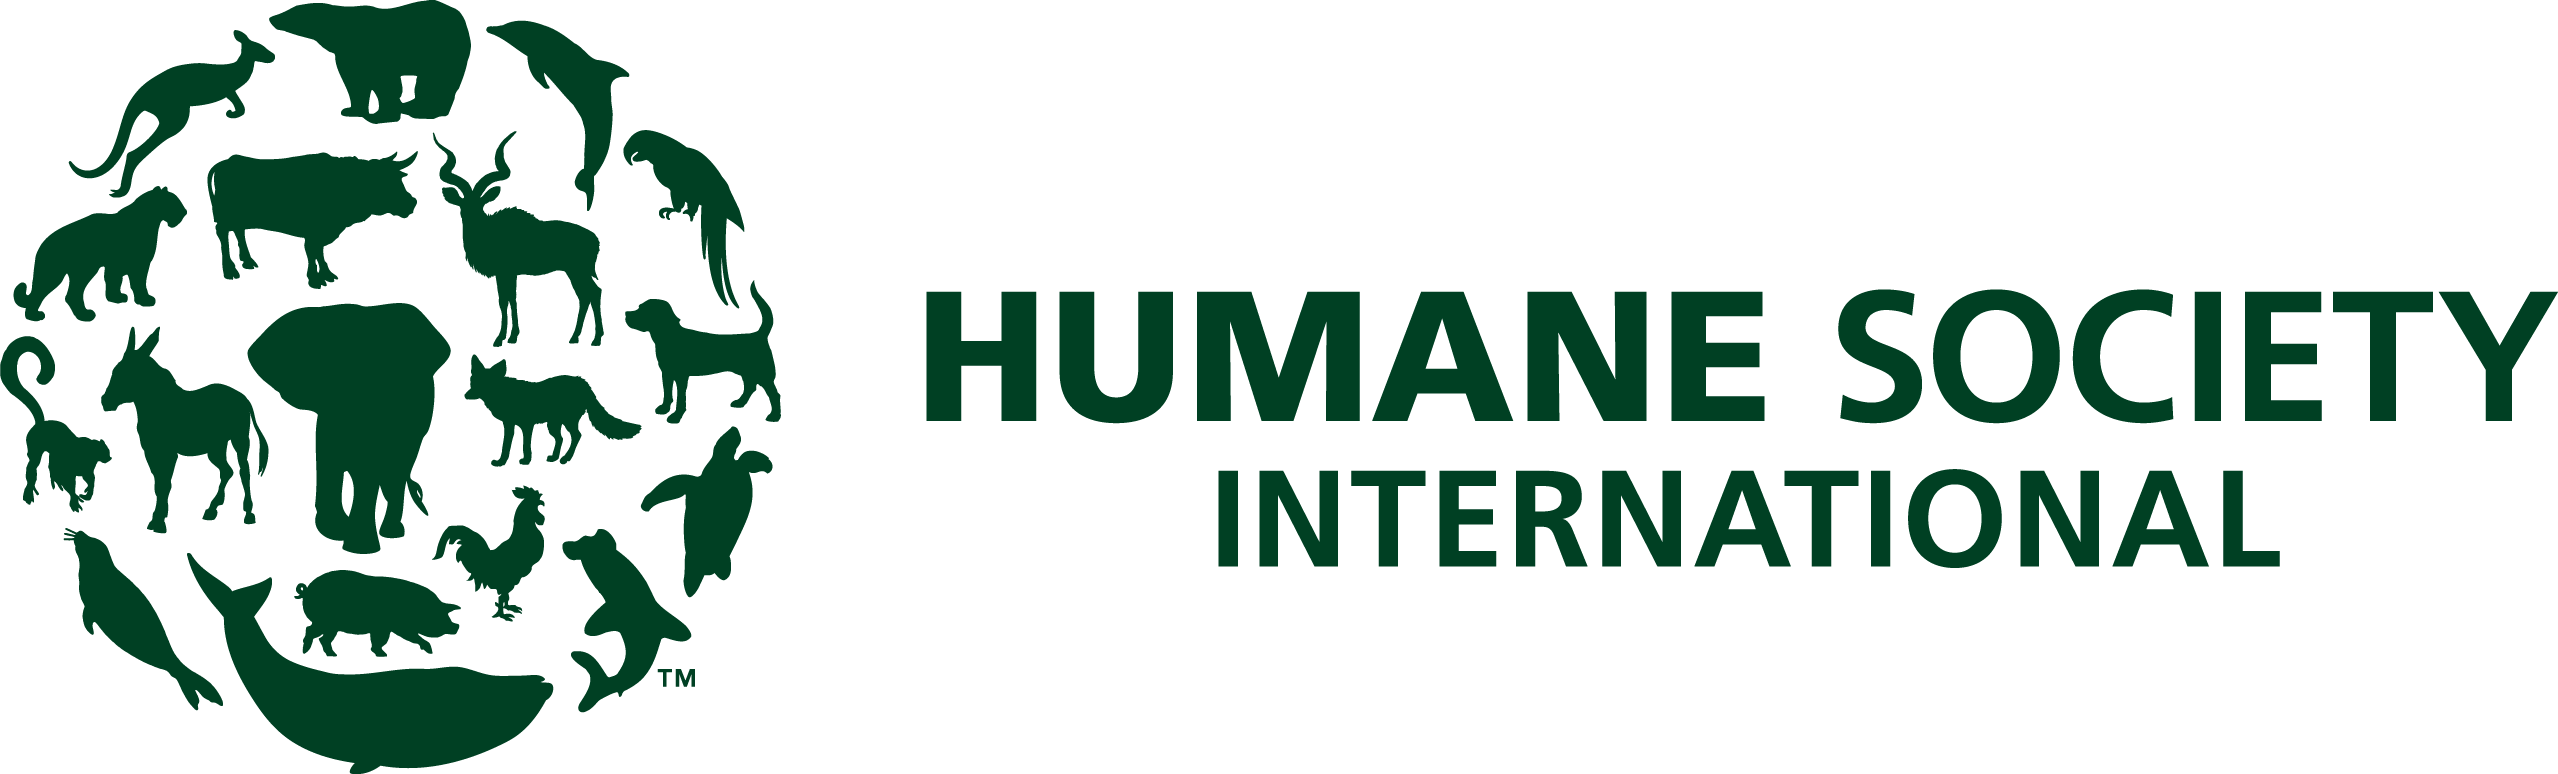 HSI logo_H_green